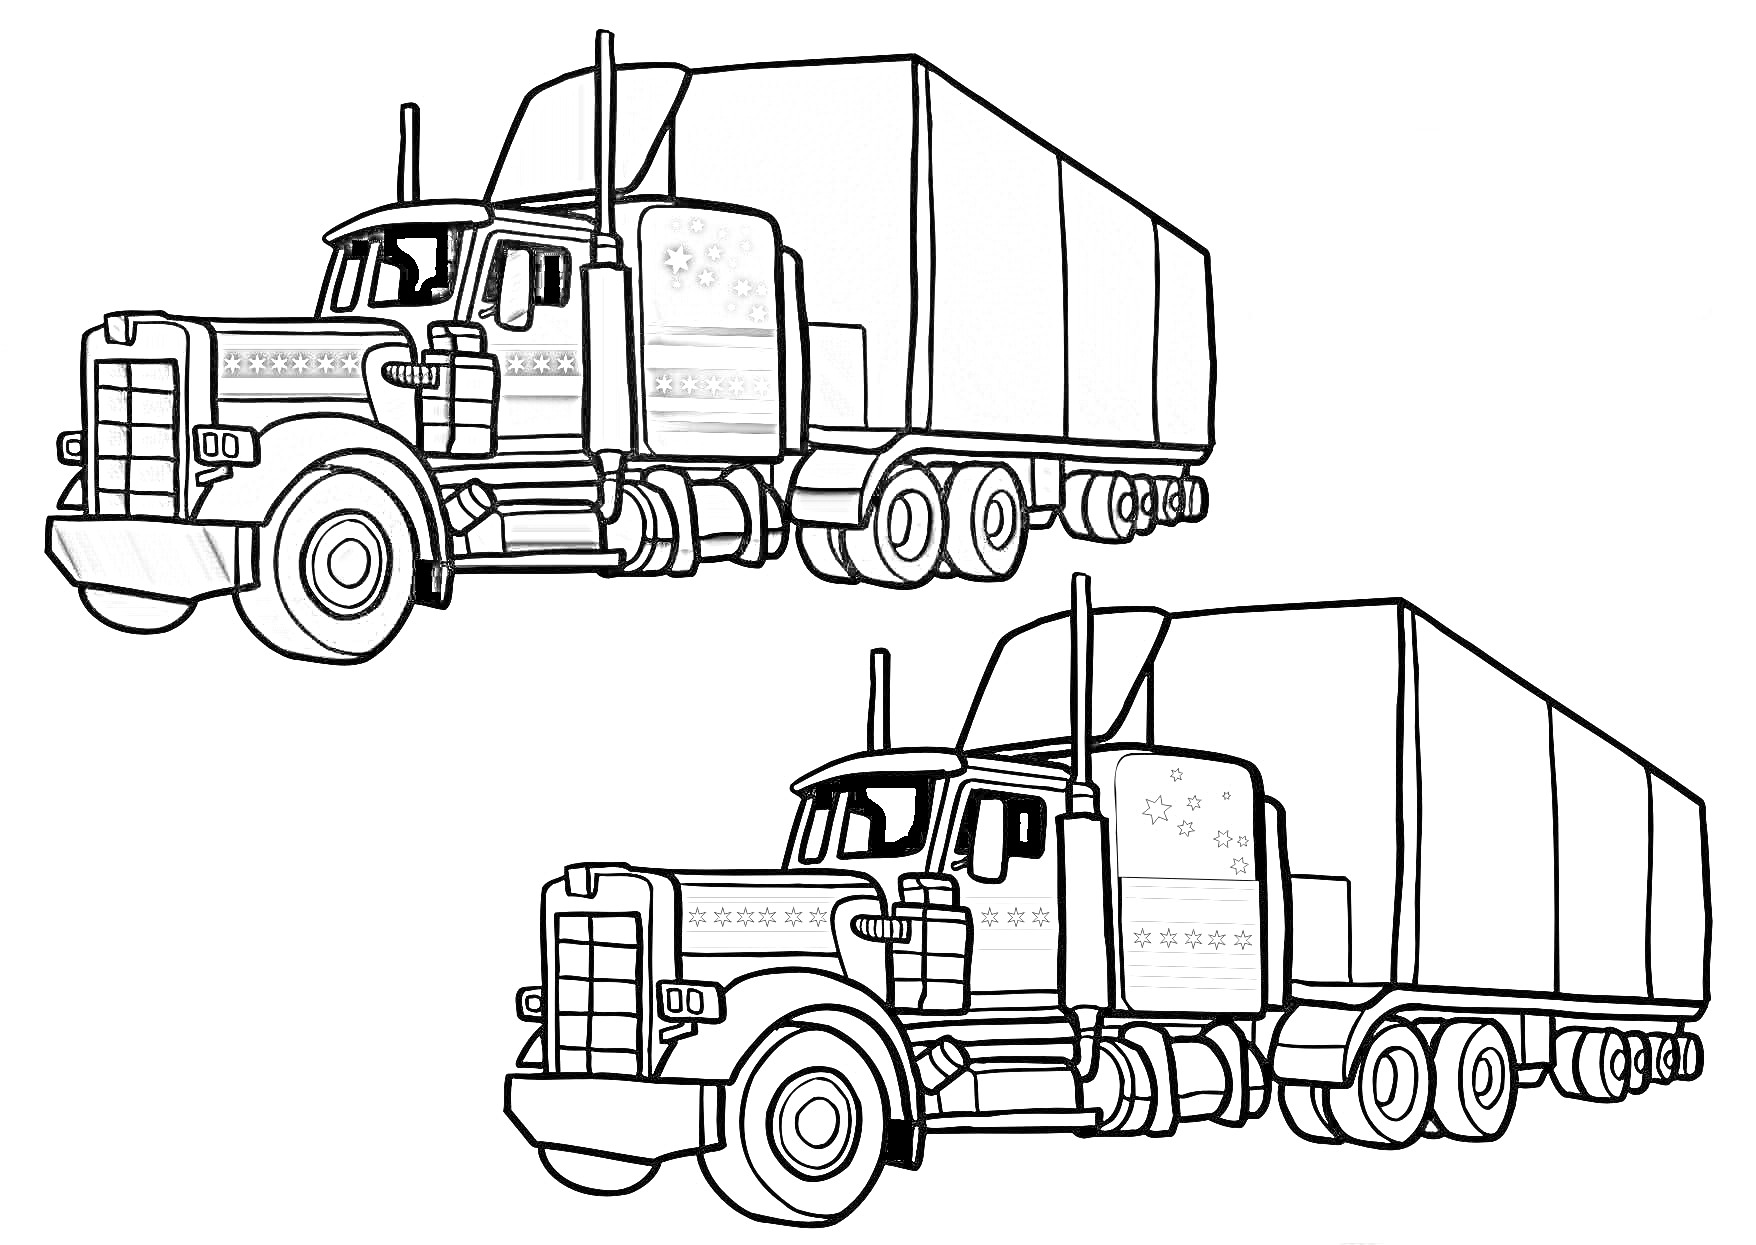 Раскраска Большой грузовик с прицепом (цветная и черно-белая версии)